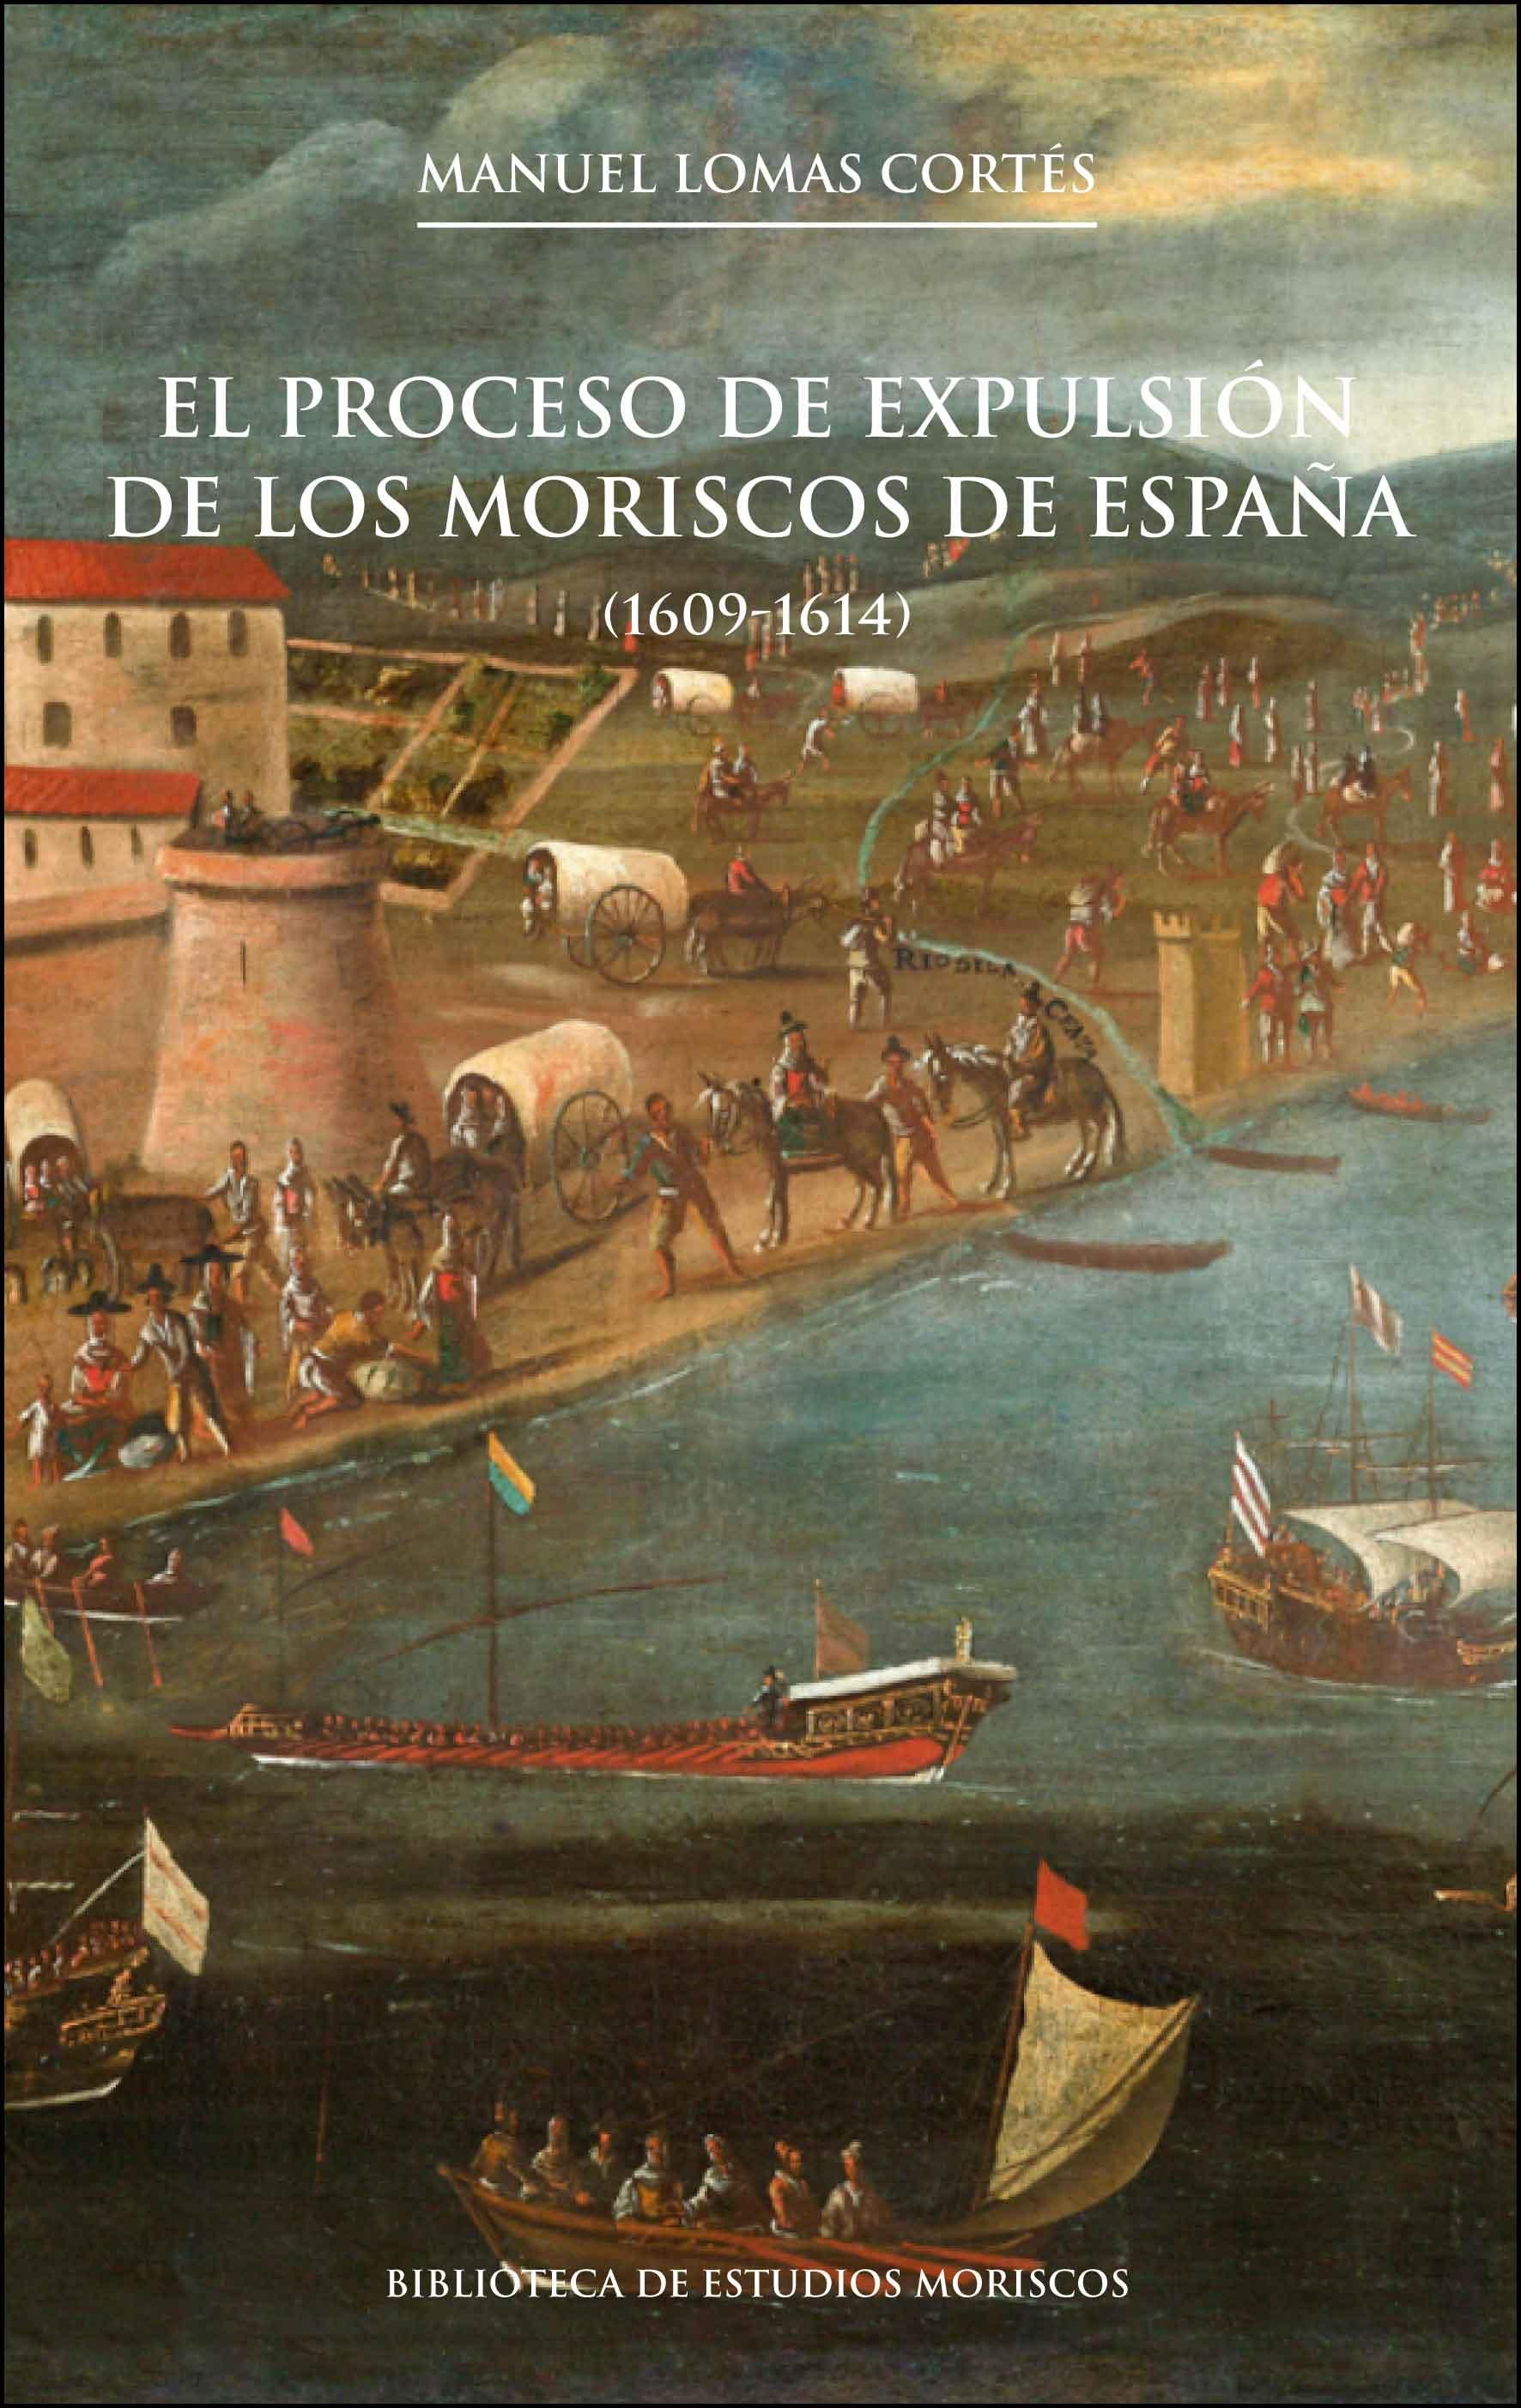 El proceso de expulsión de los moriscos de España. " (1609-1614) "